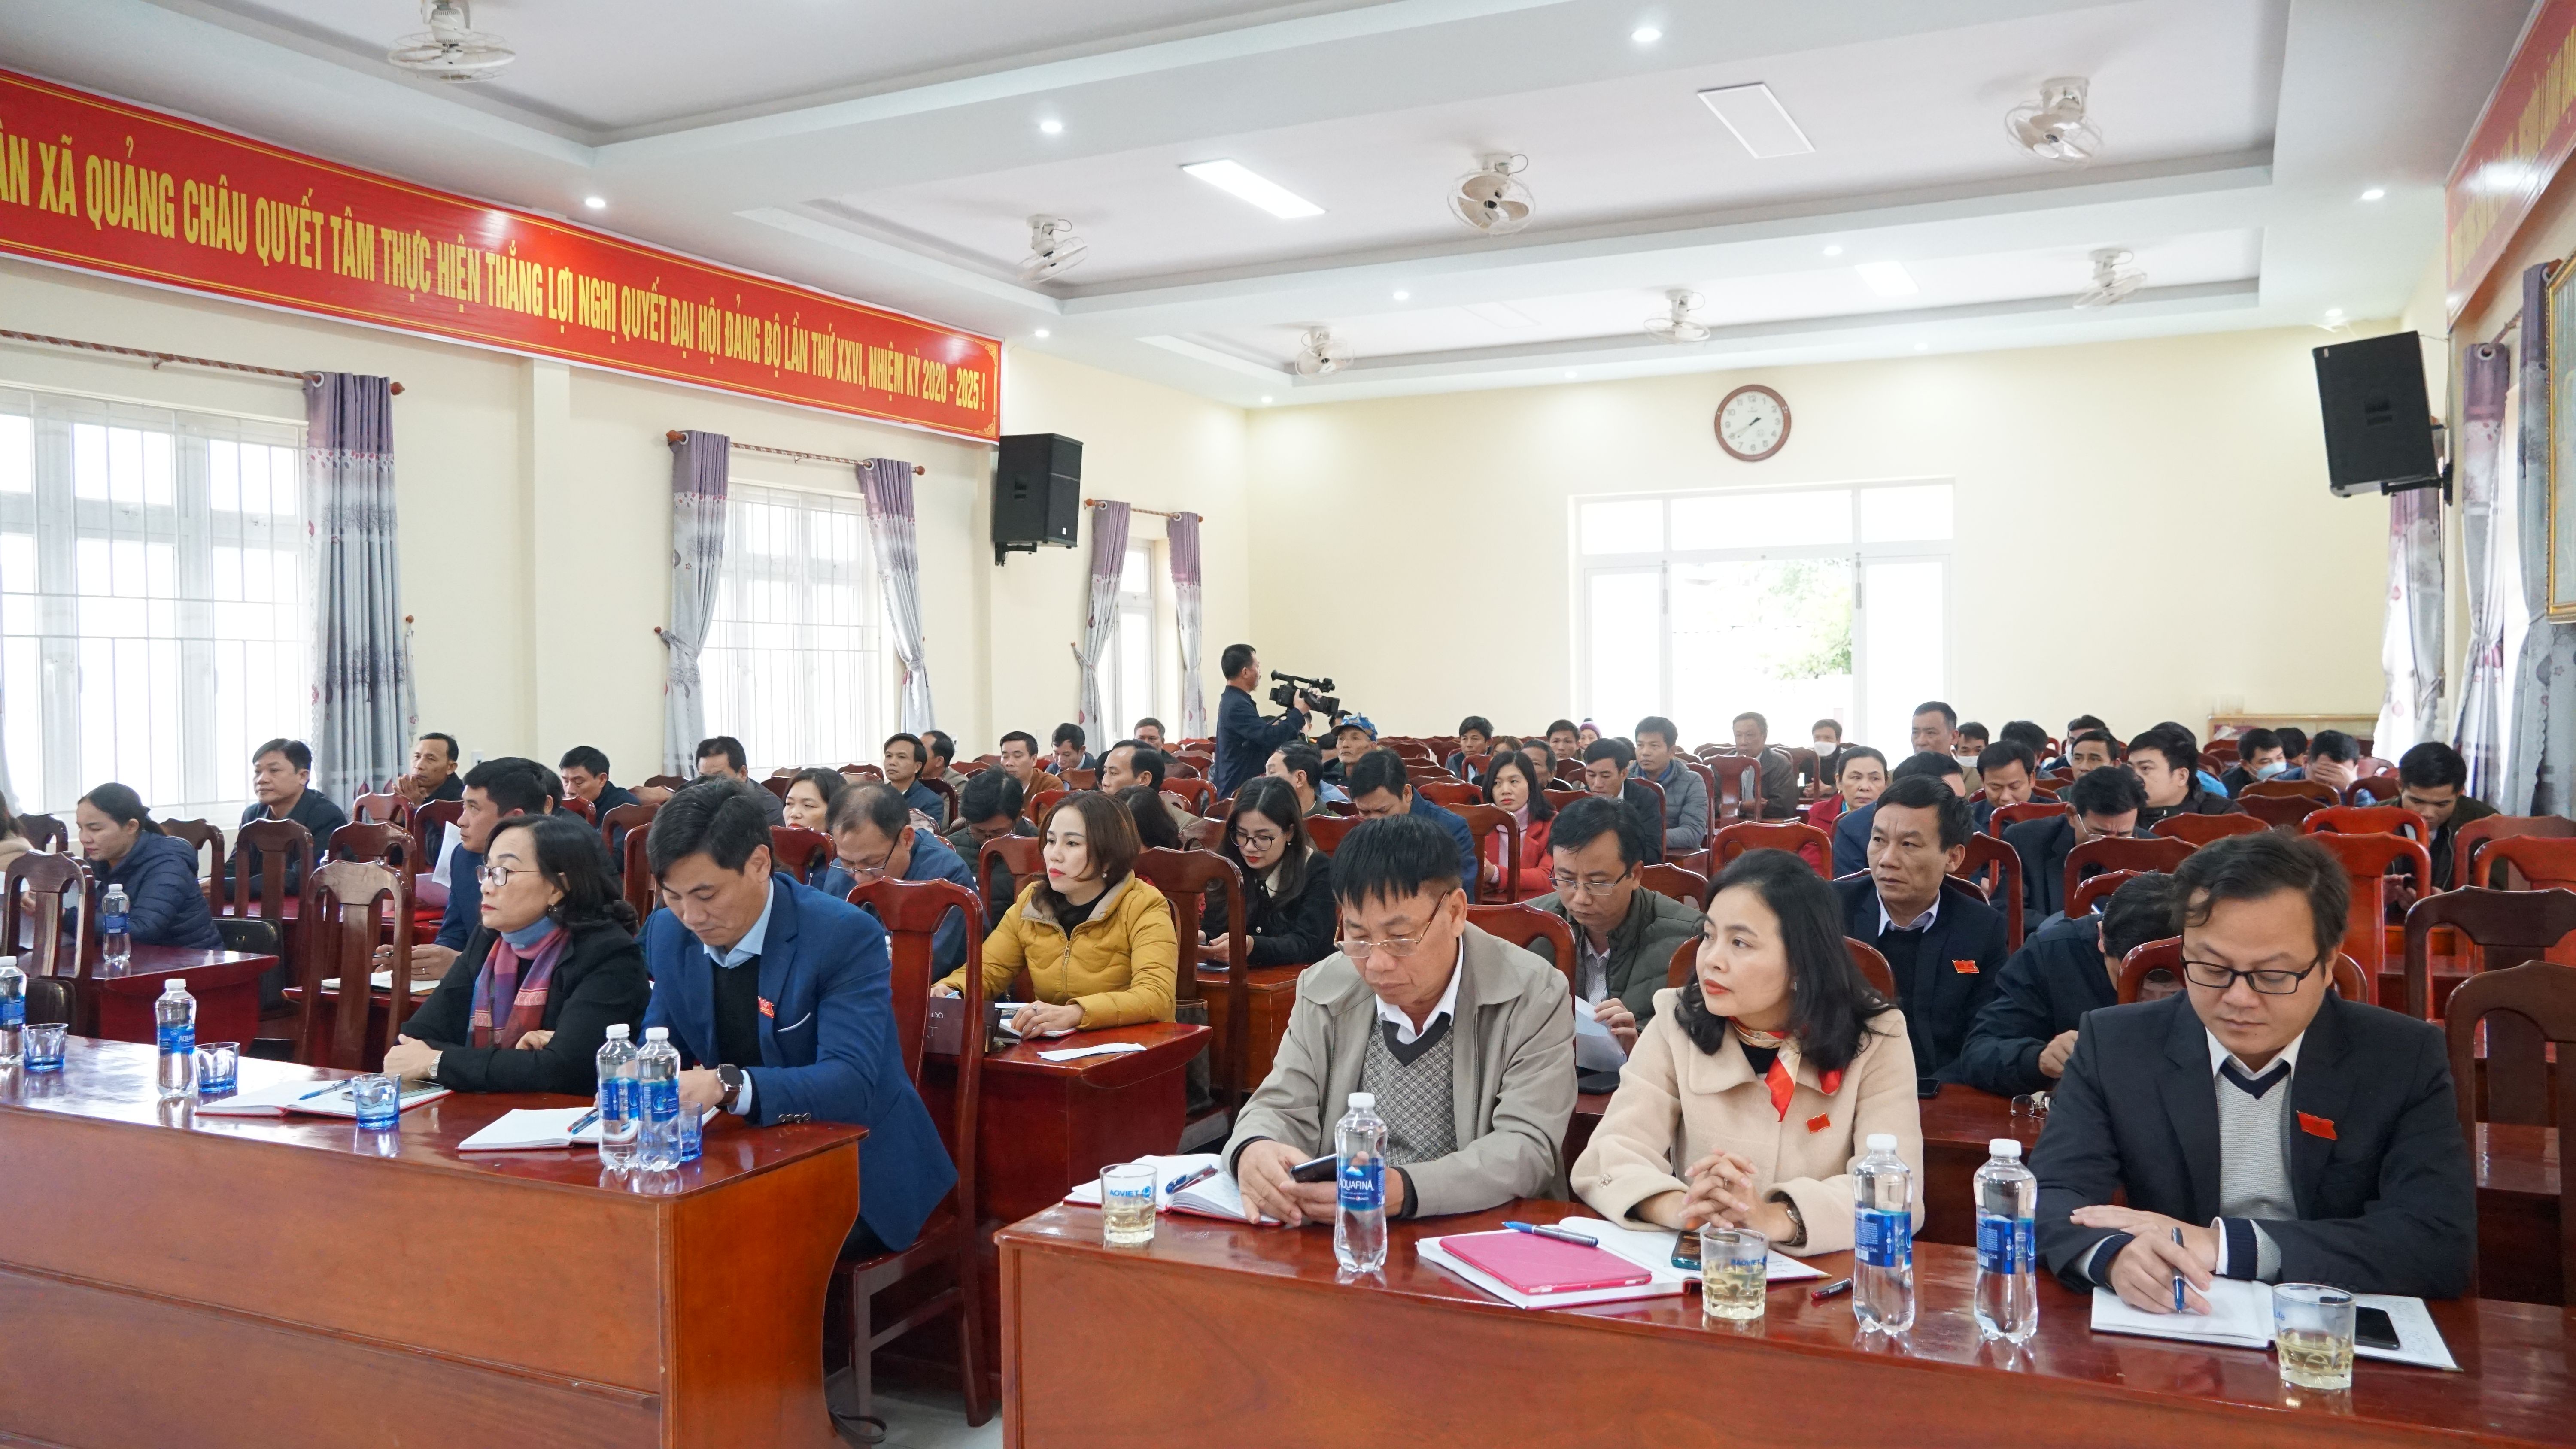 Đông đảo cử tri tham dự buổi tiếp xúc với đại biểu HĐND tỉnh tại xã Quảng Châu.